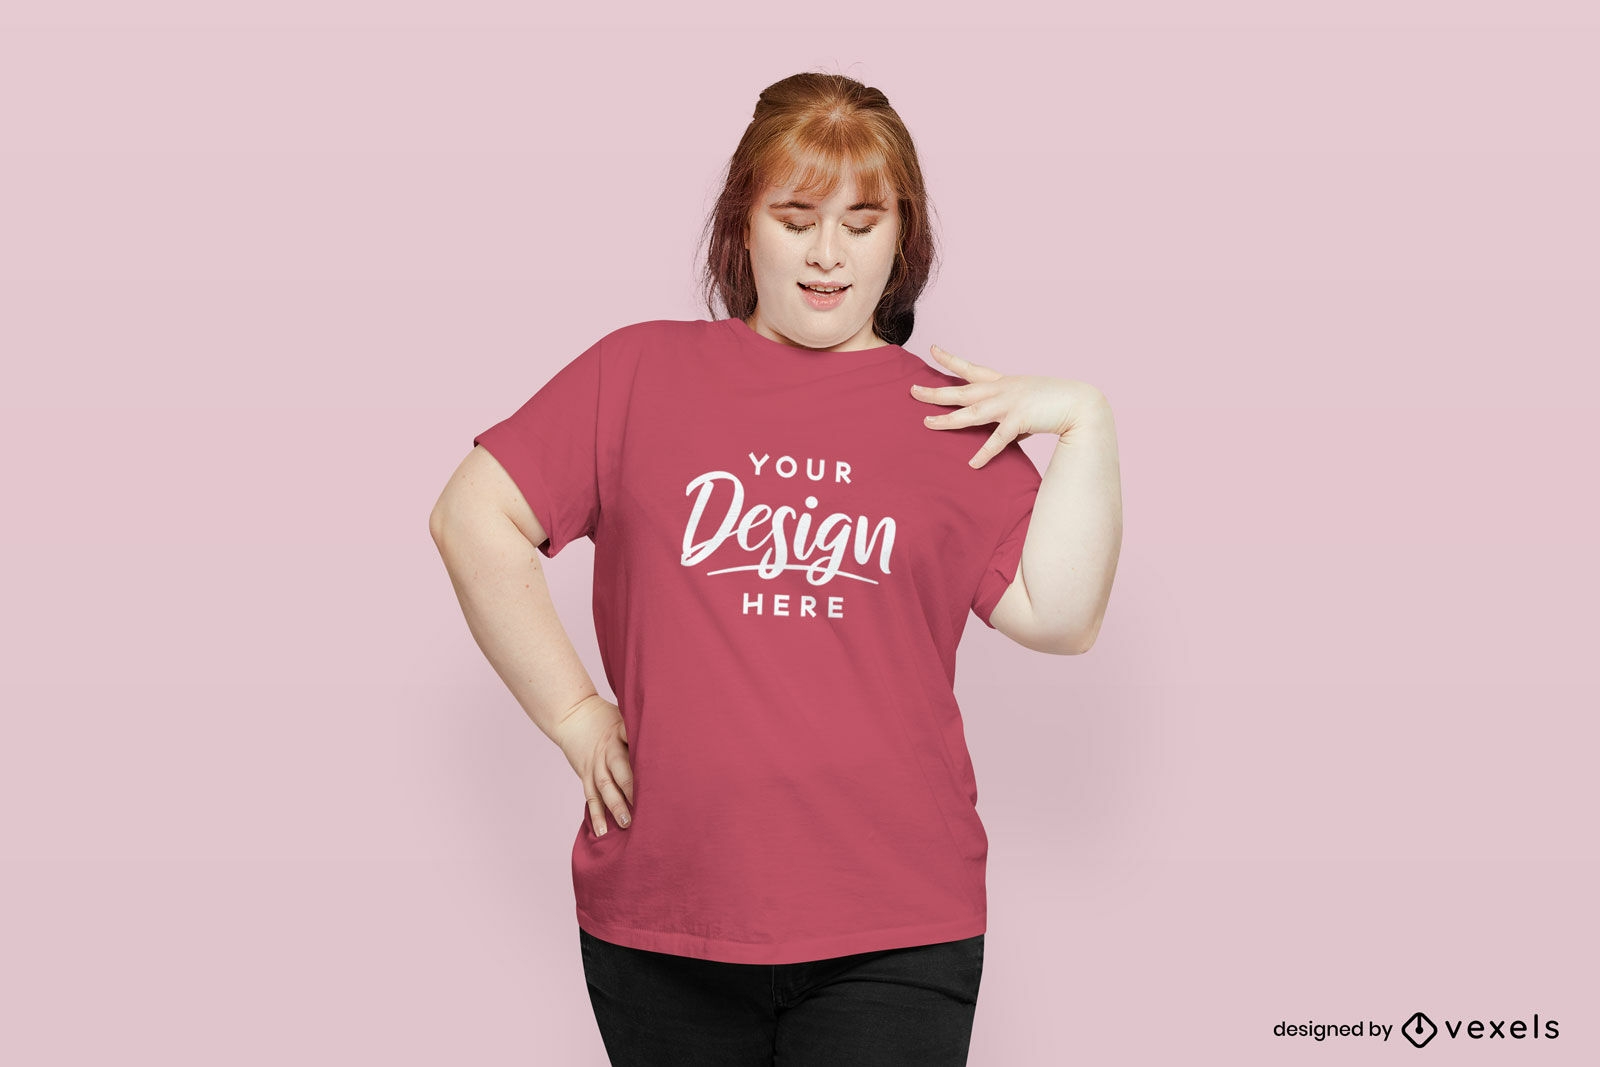 Woman looking at t-shirt mockup design